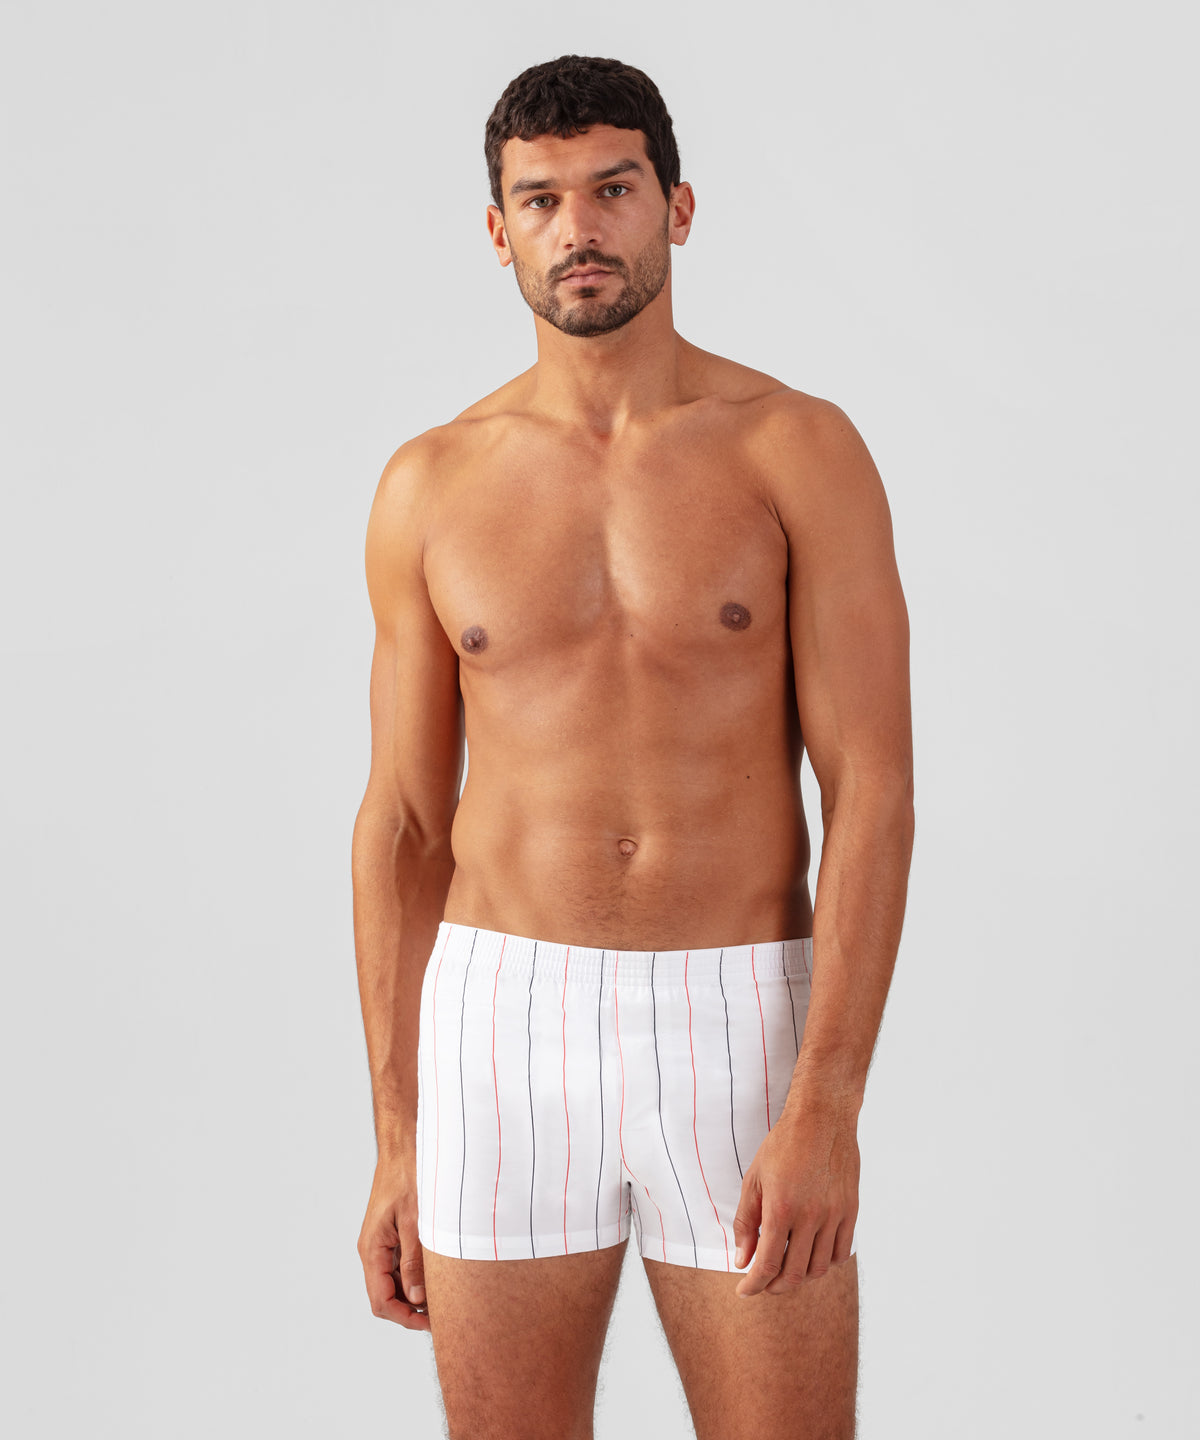 Buy the latest HOM designer underwear for men from France